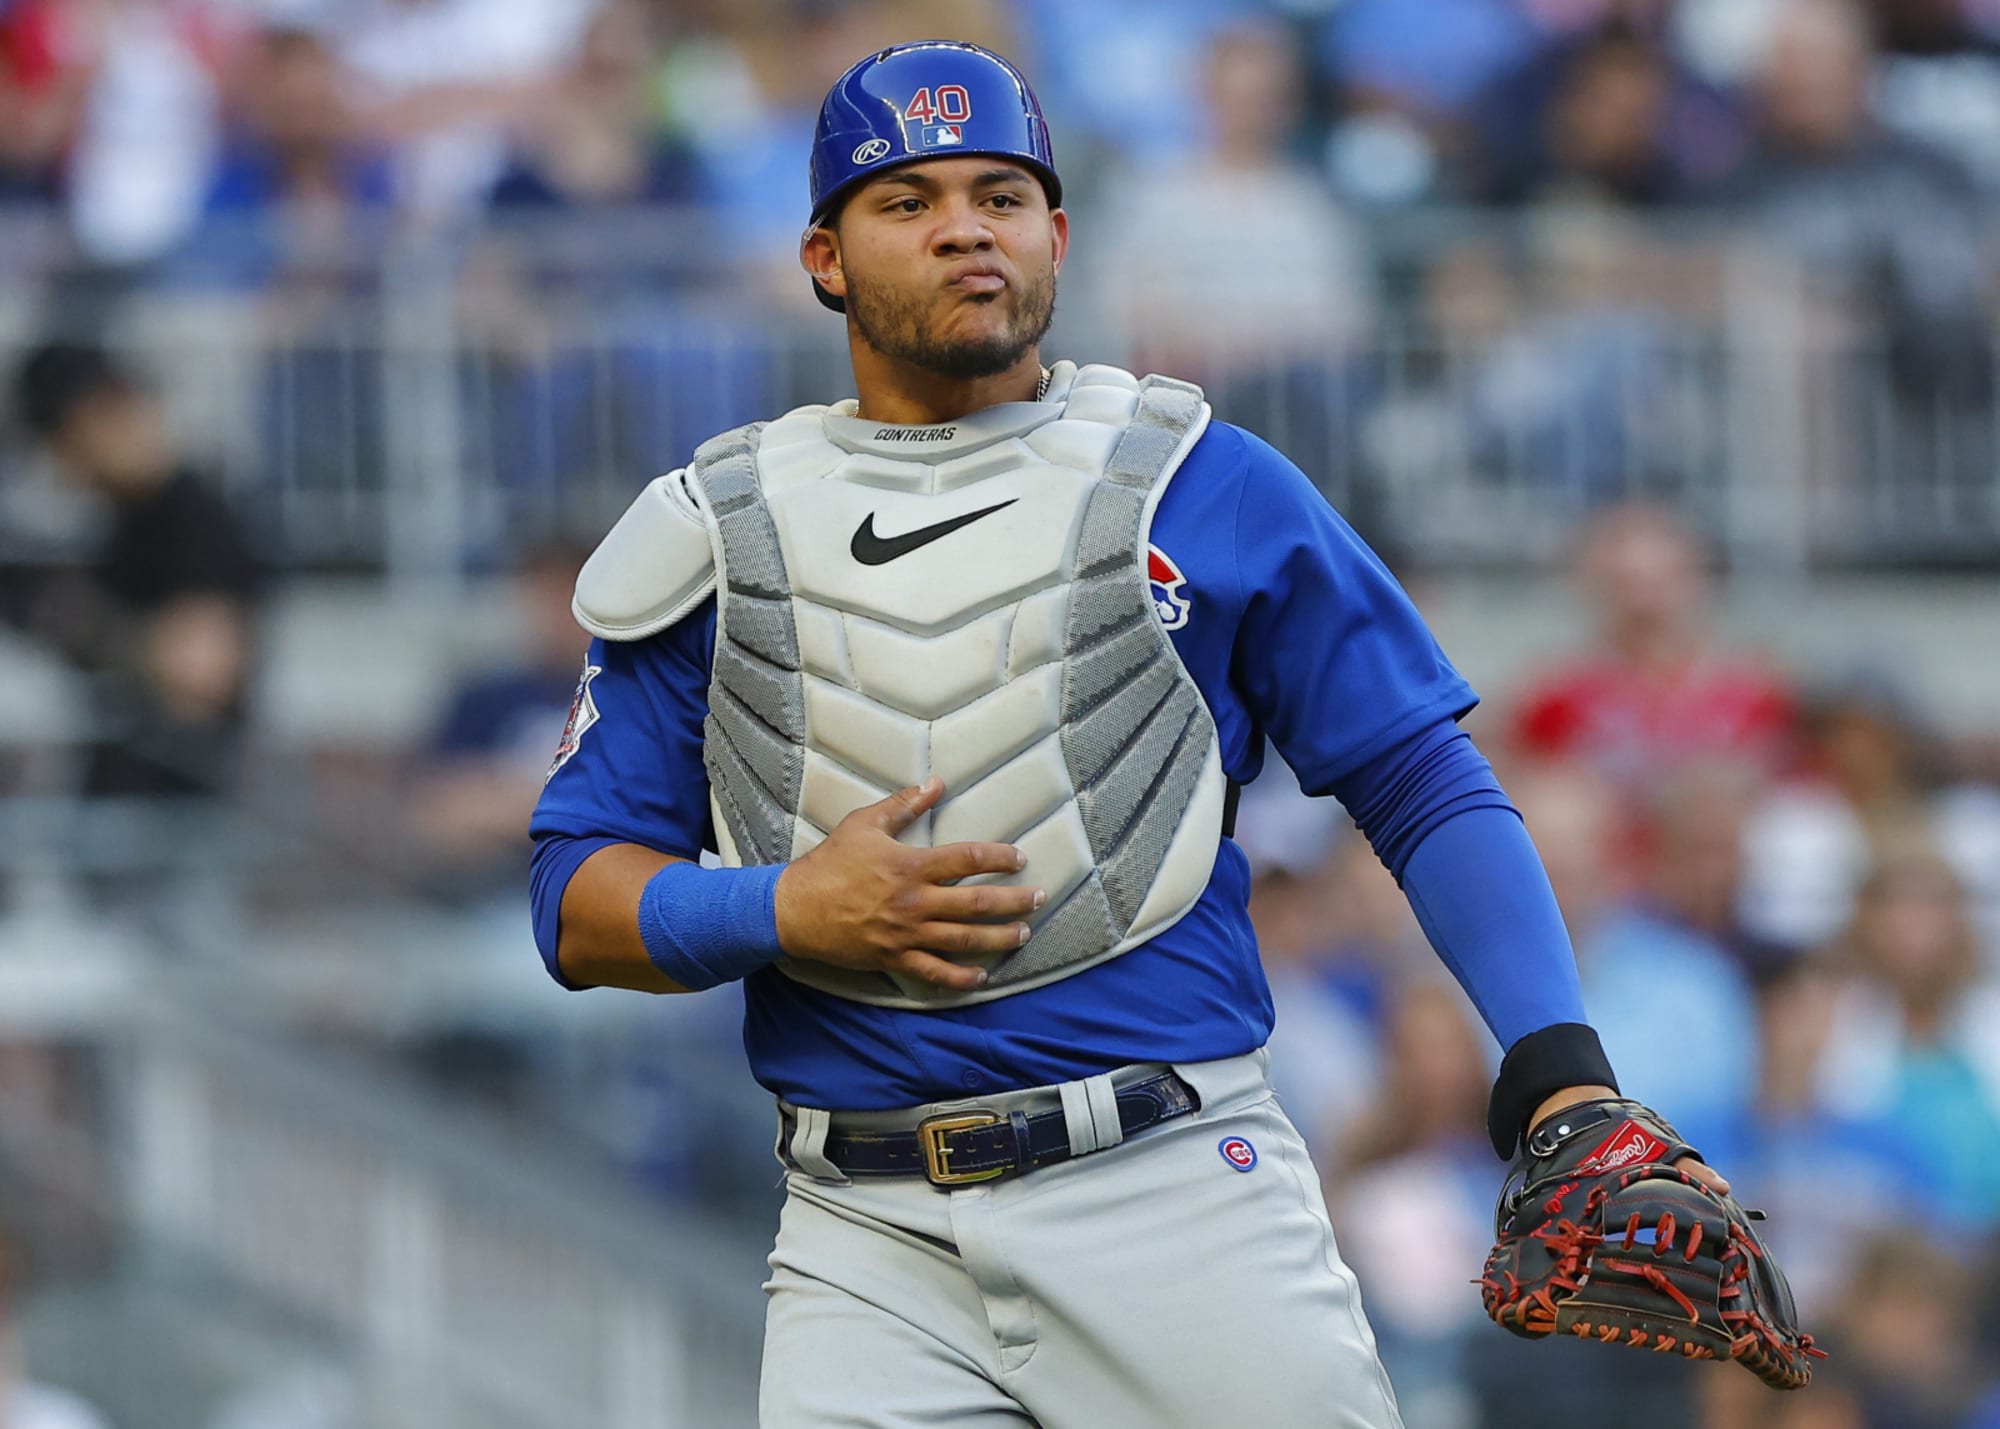 Cubs: Willson Contreras' bat spike deserves a spot in Cooperstown